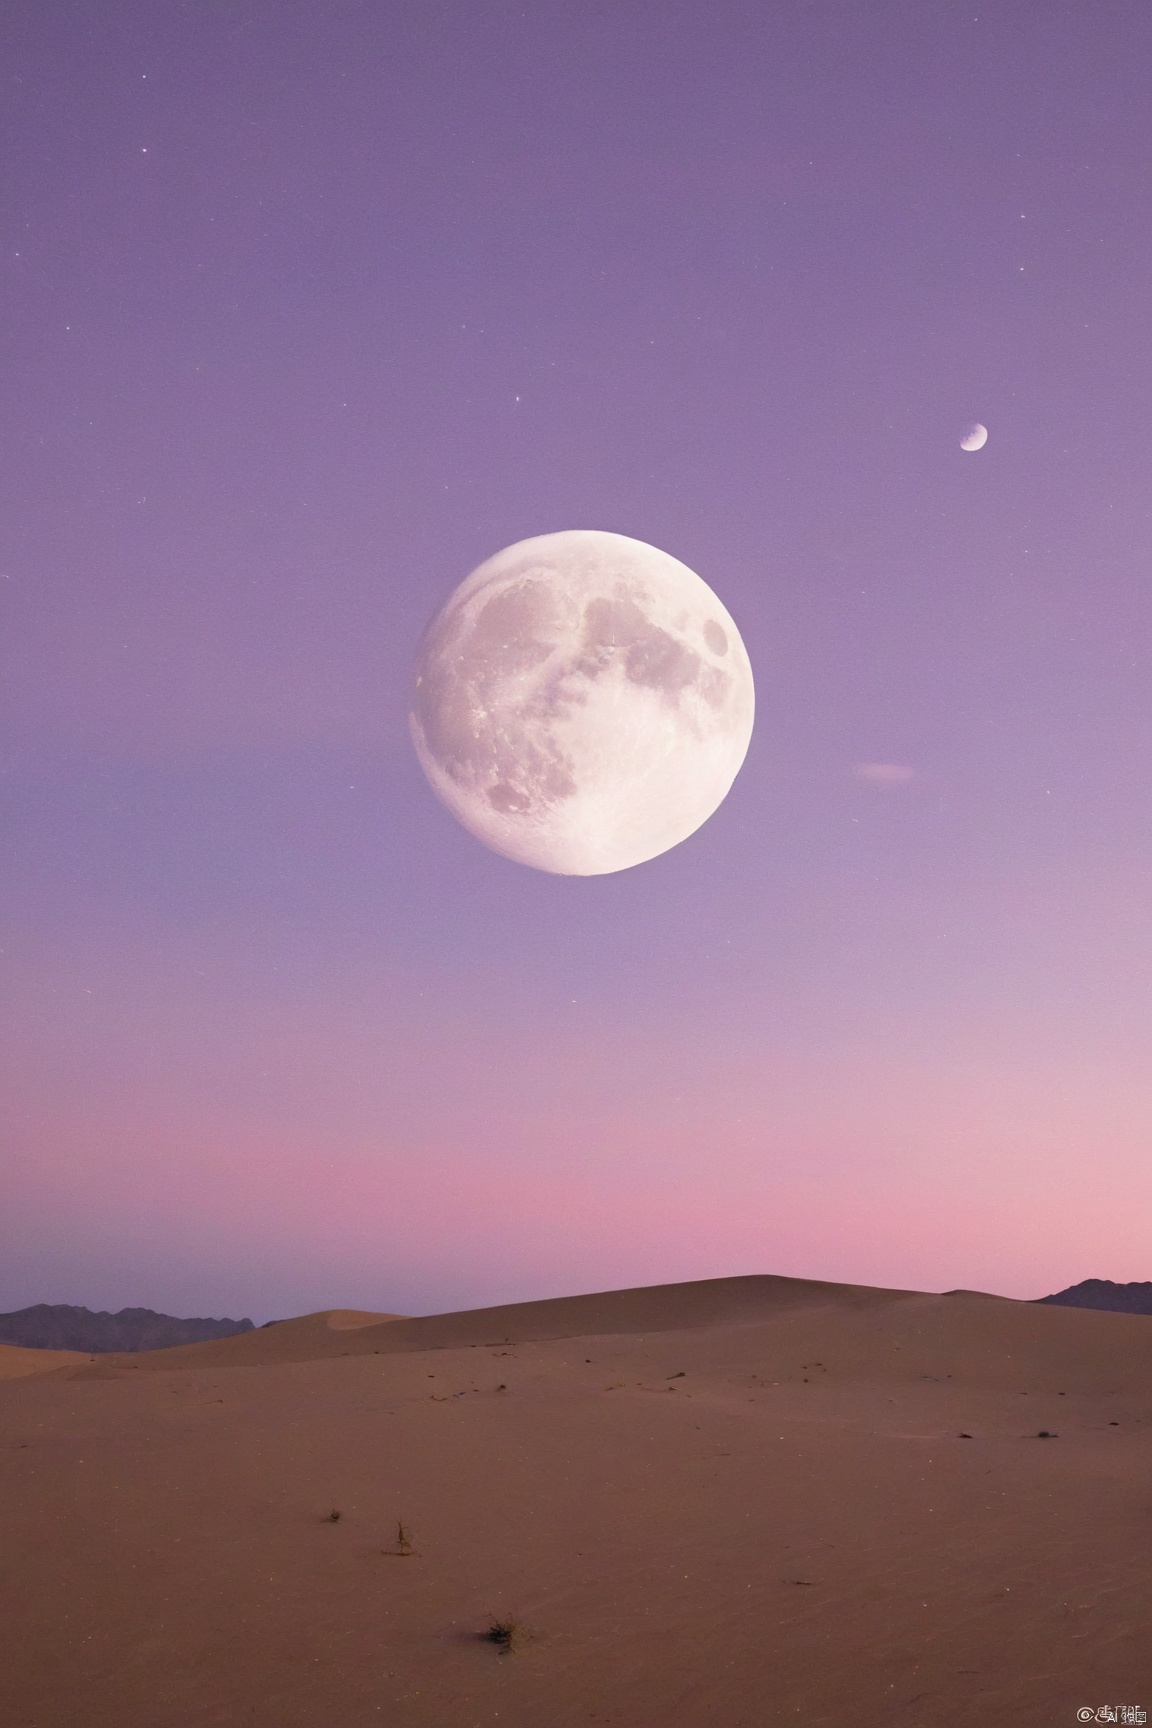 desert_sky,full moon,scenery,desert,1girl,pink-purple sky,star,more detail XL,xxmixgirl, xxmix_girl, monkren, qingyi, 